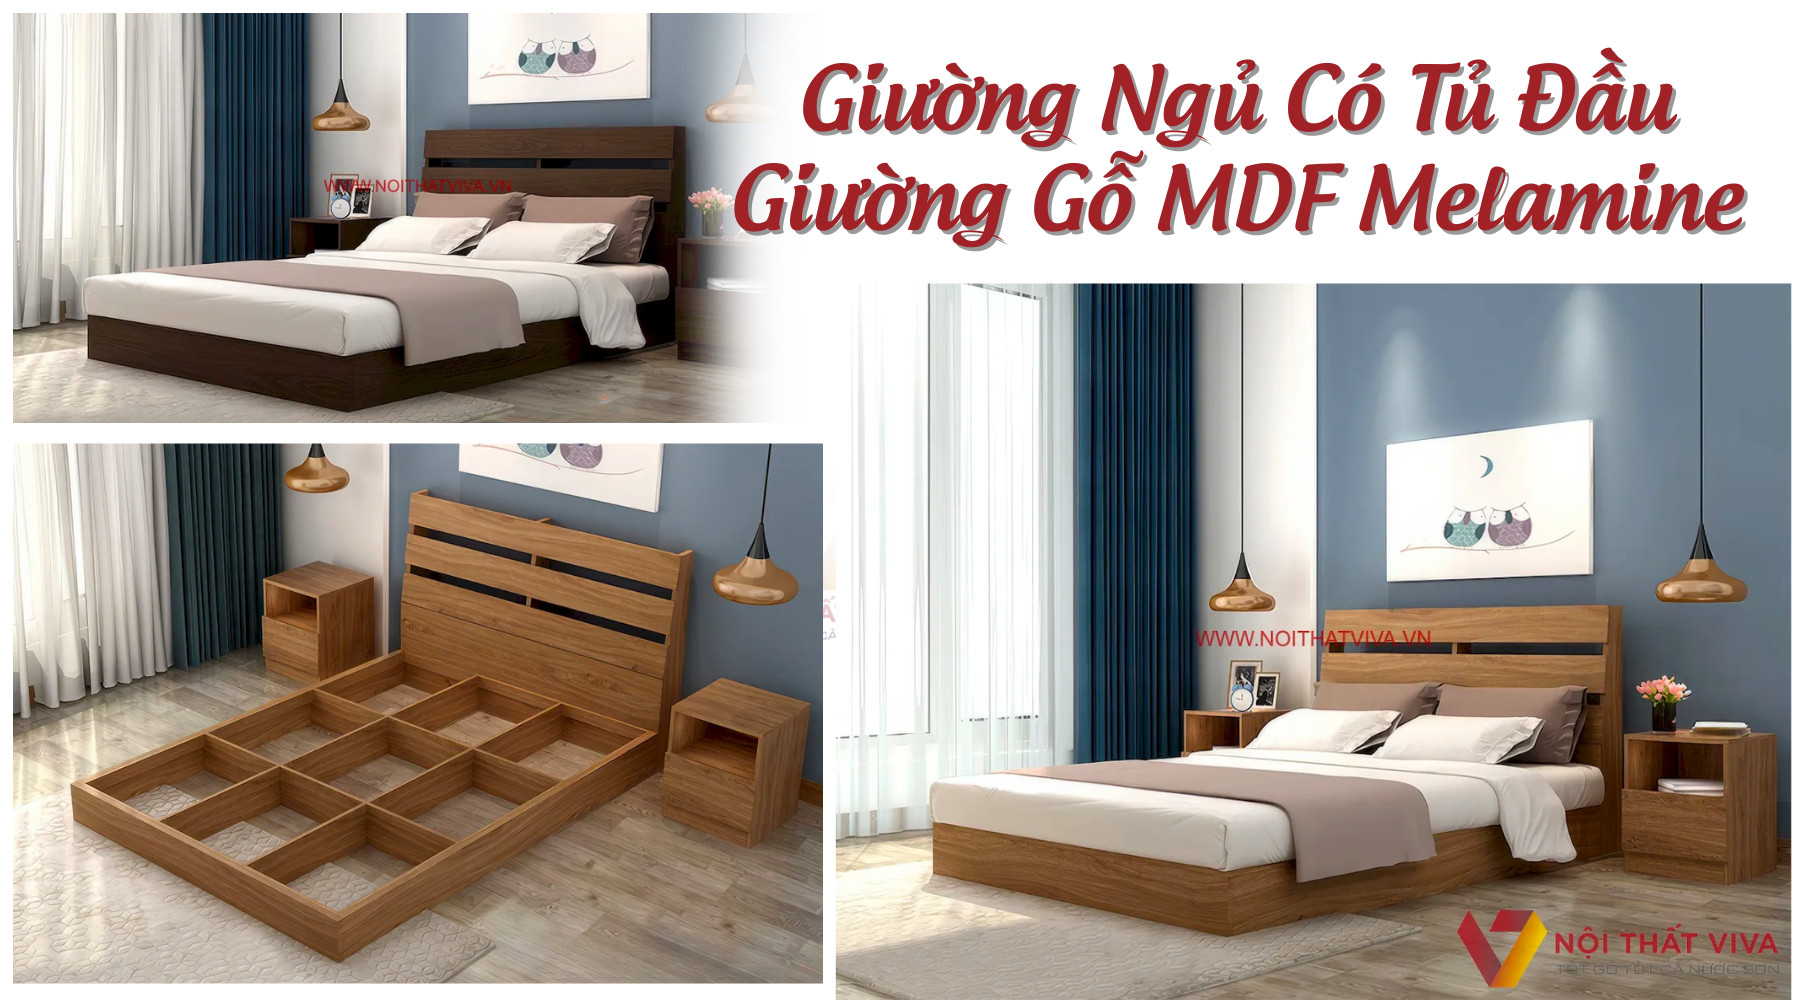 Giường Ngủ Có Tủ Đầu Giường Gỗ MDF Melamine Vân Gỗ Đẹp Hiện Đại Giá Rẻ